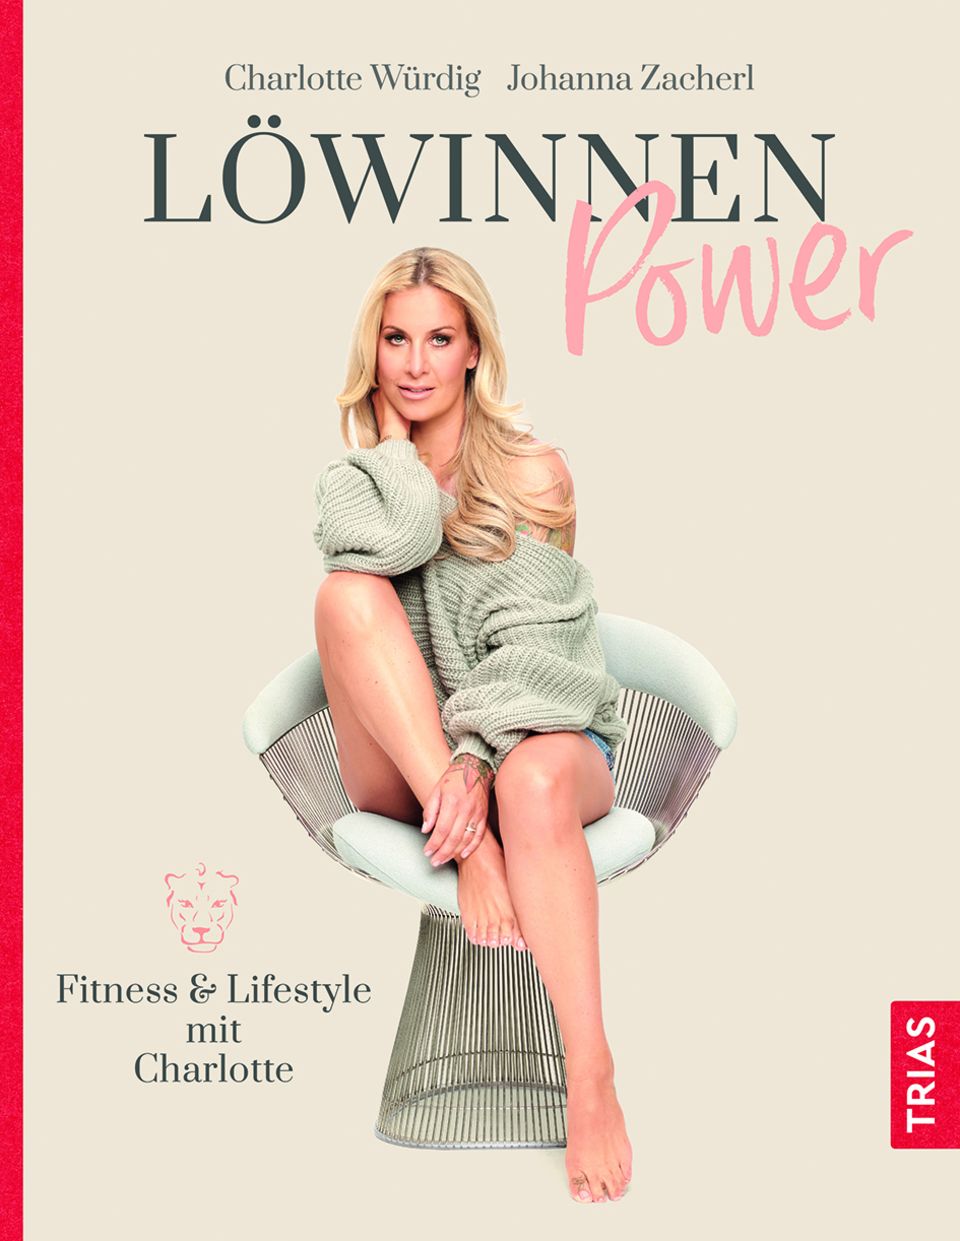 Zum Weiterlesen: "Löwinnen Power" von Charlotte Würdig und Johanna Zacherl. Erschienen im Trias-Verlag. 200 Seiten.